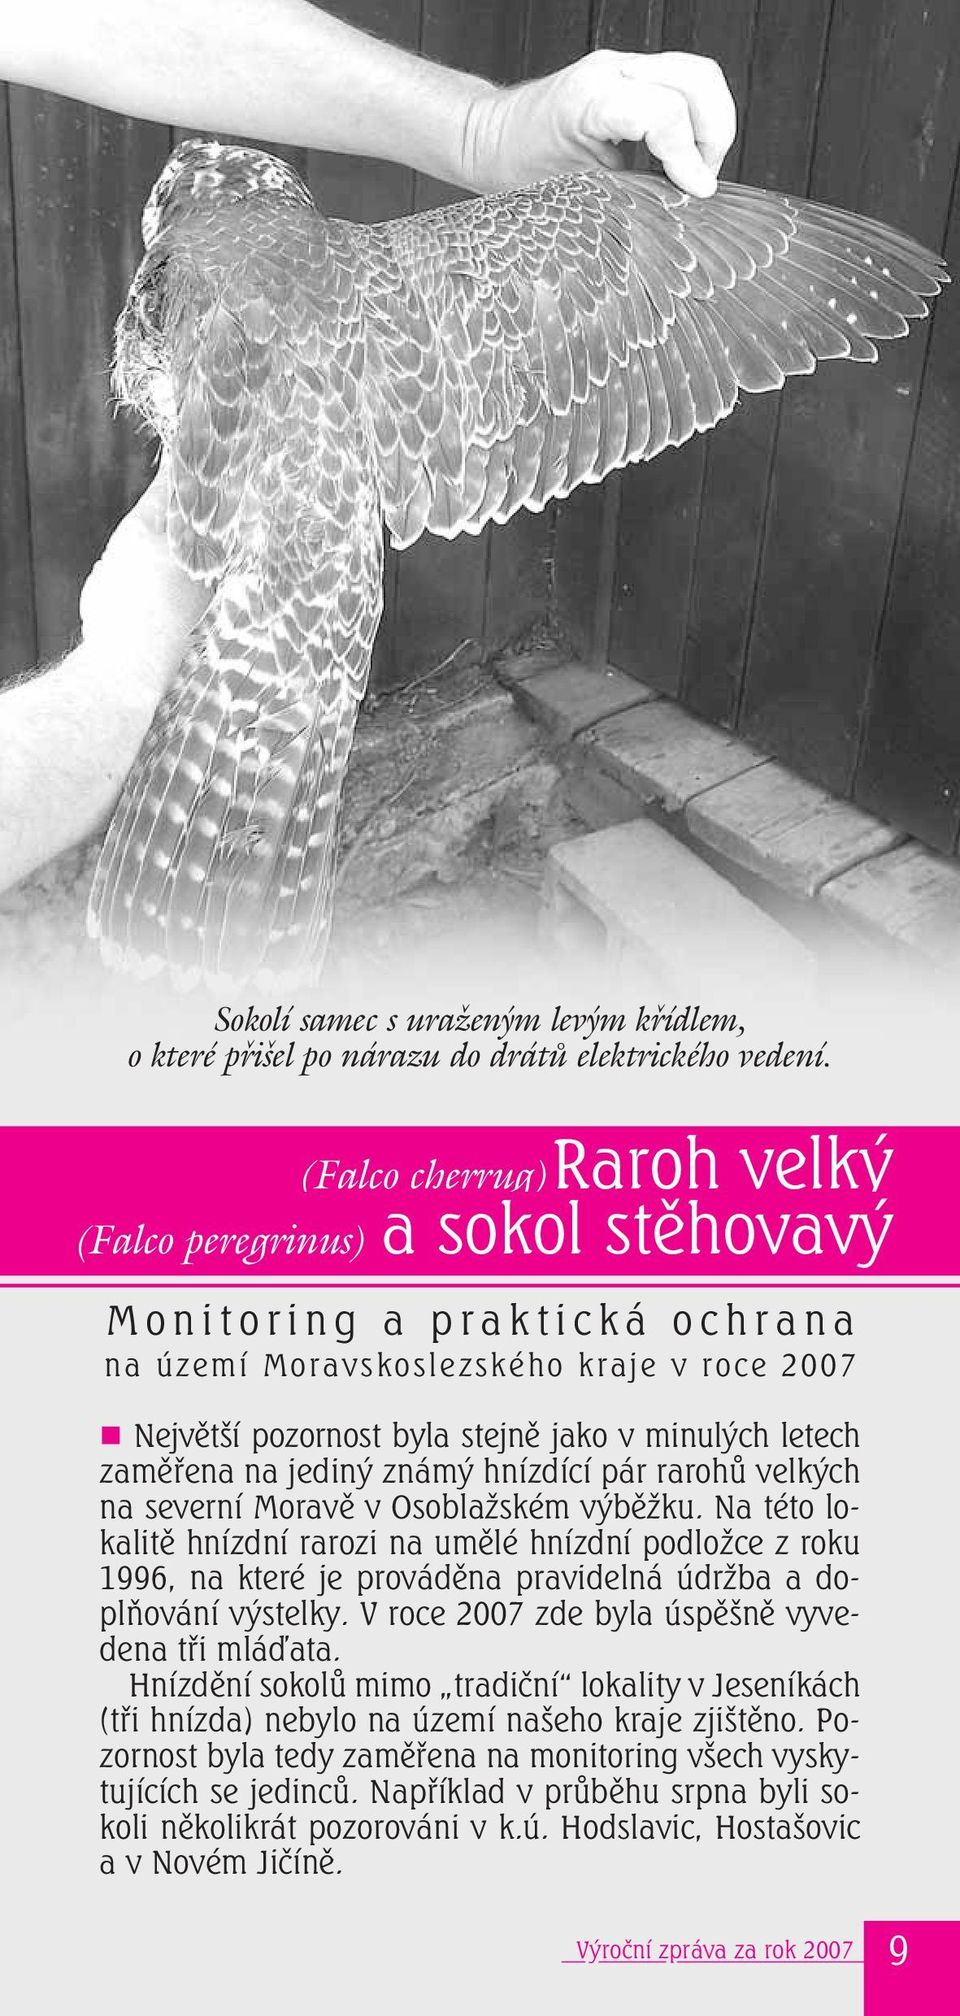 zaměřena na jediný známý hnízdící pár rarohů velkých na severní Moravě v Osoblažském výběžku.